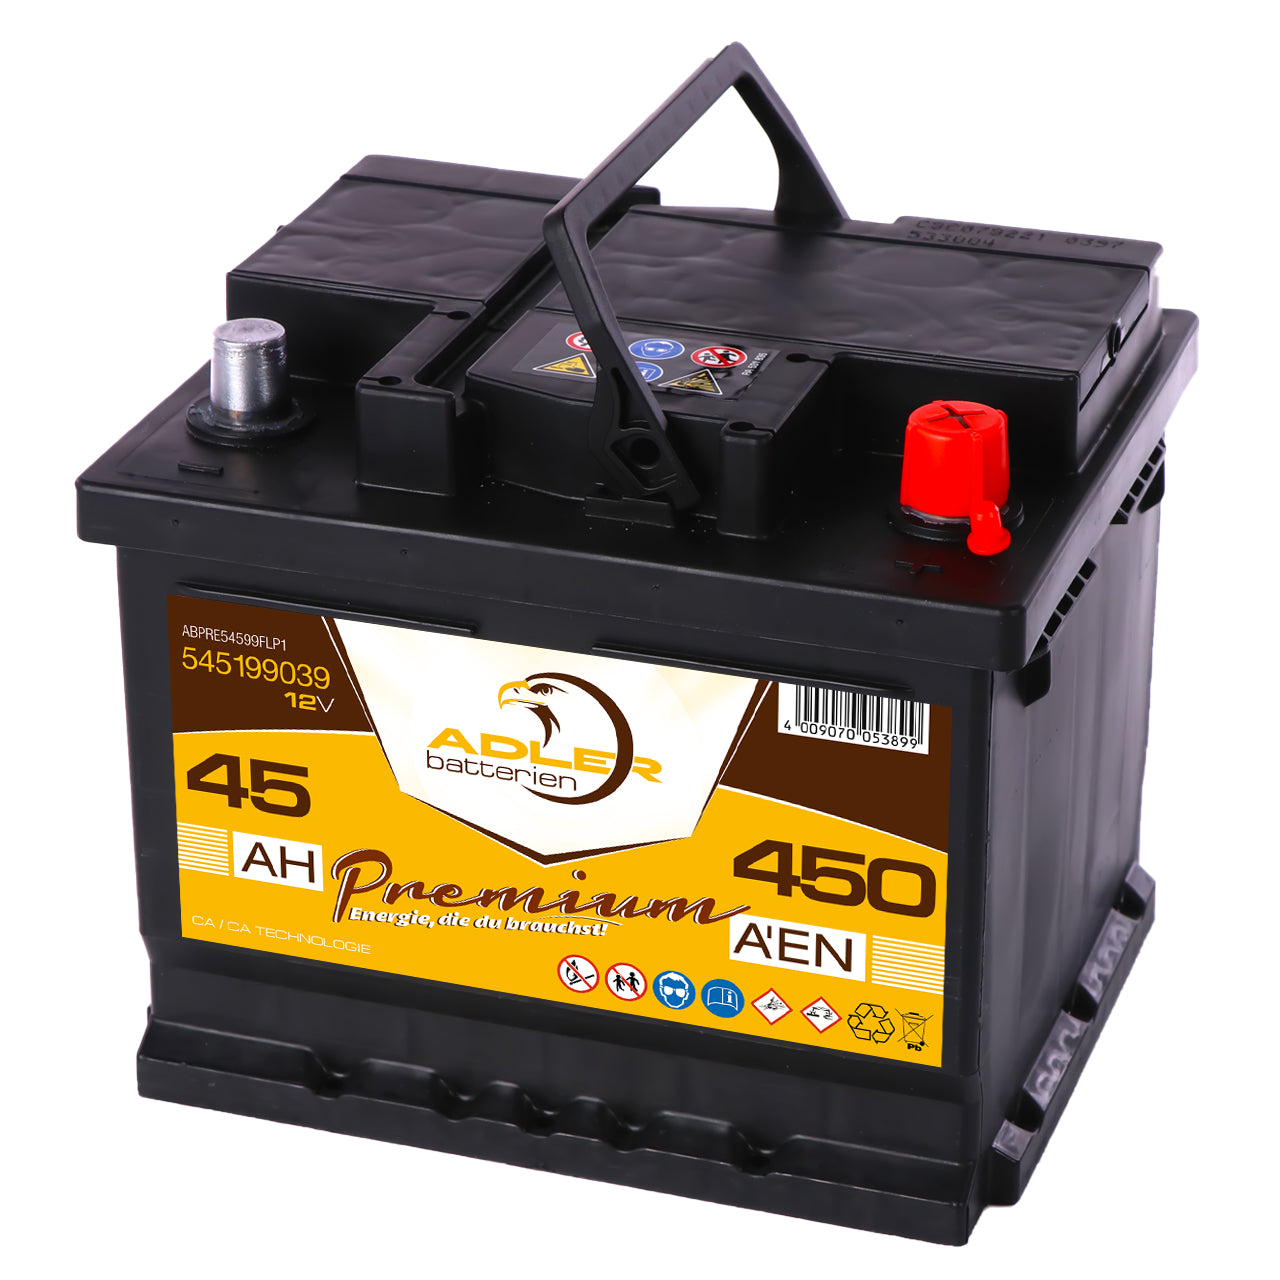 https://www.batterie-industrie-germany.de/cdn/shop/files/Autobatterie-Adler45-12V-45Ah-Seite-rechts_1280x.jpg?v=1700581552